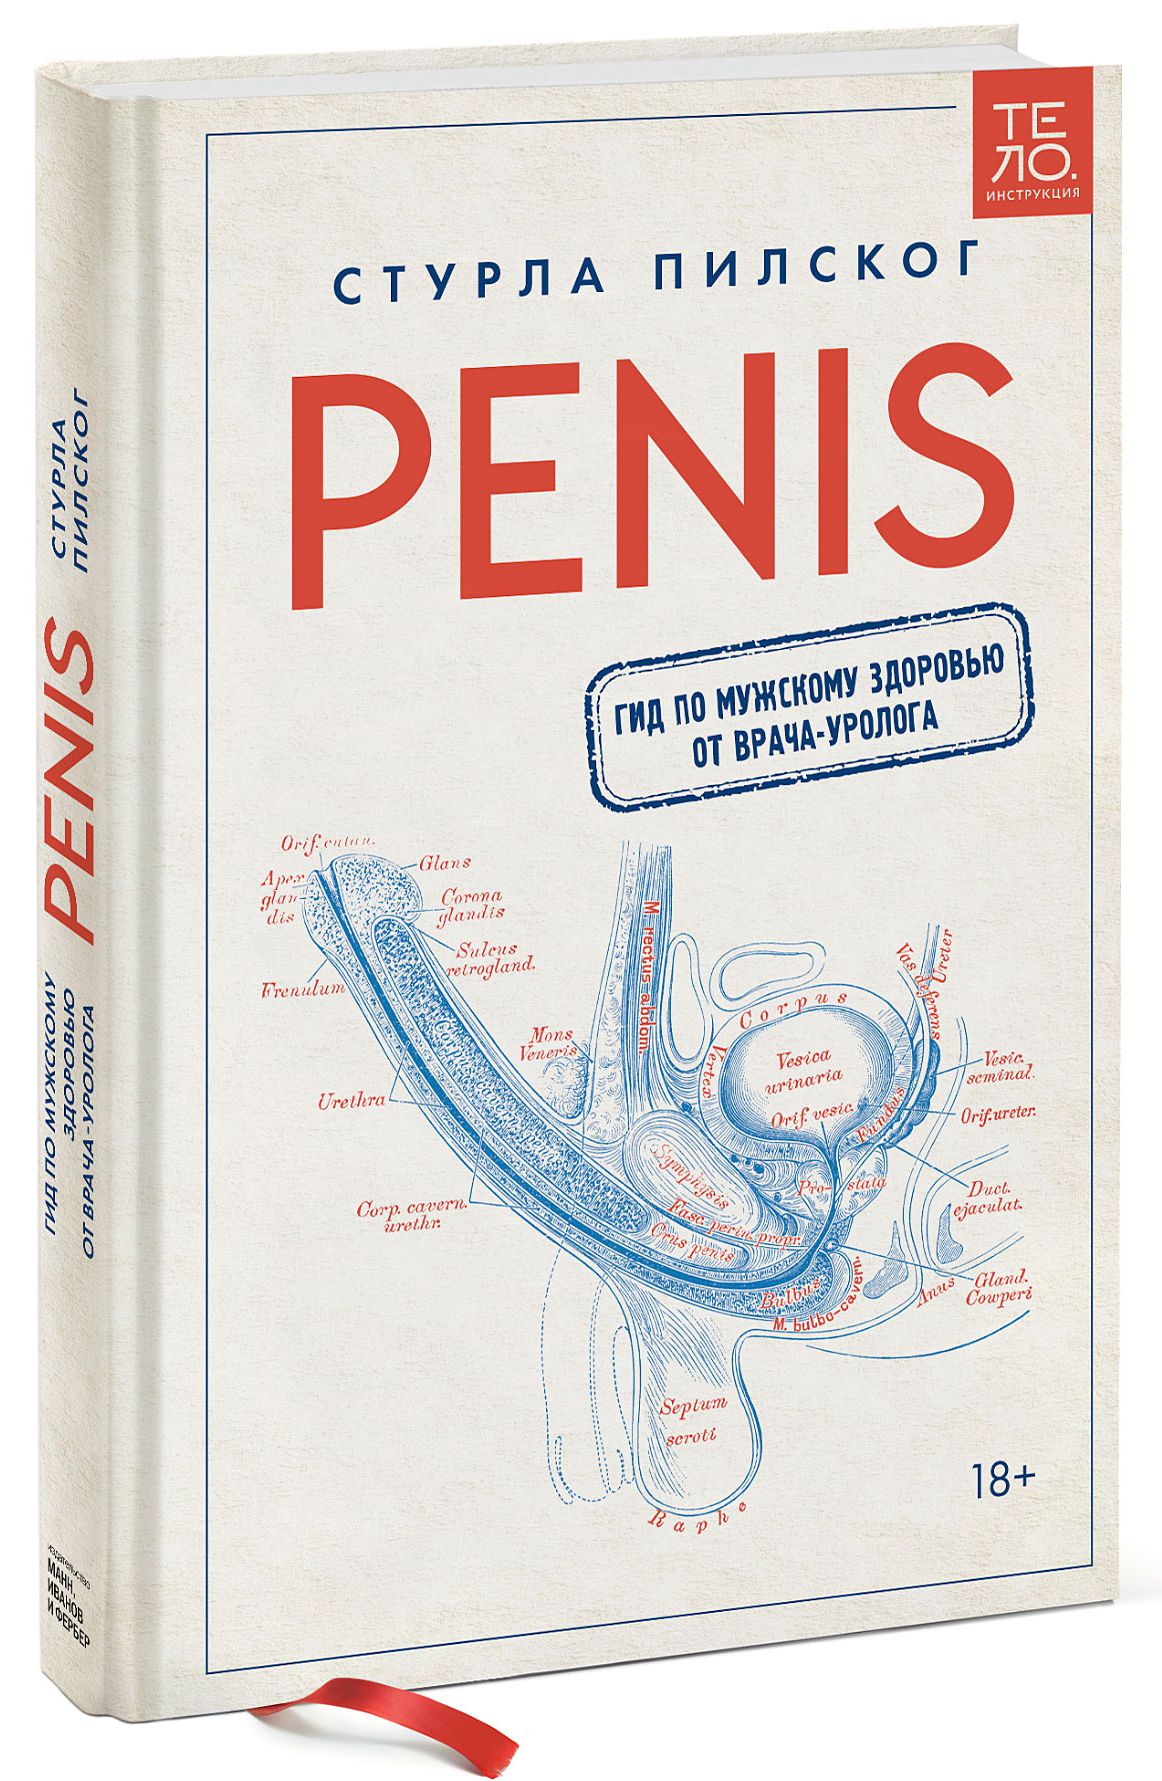 Penis: Гид по мужскому здоровью от врача-уролога